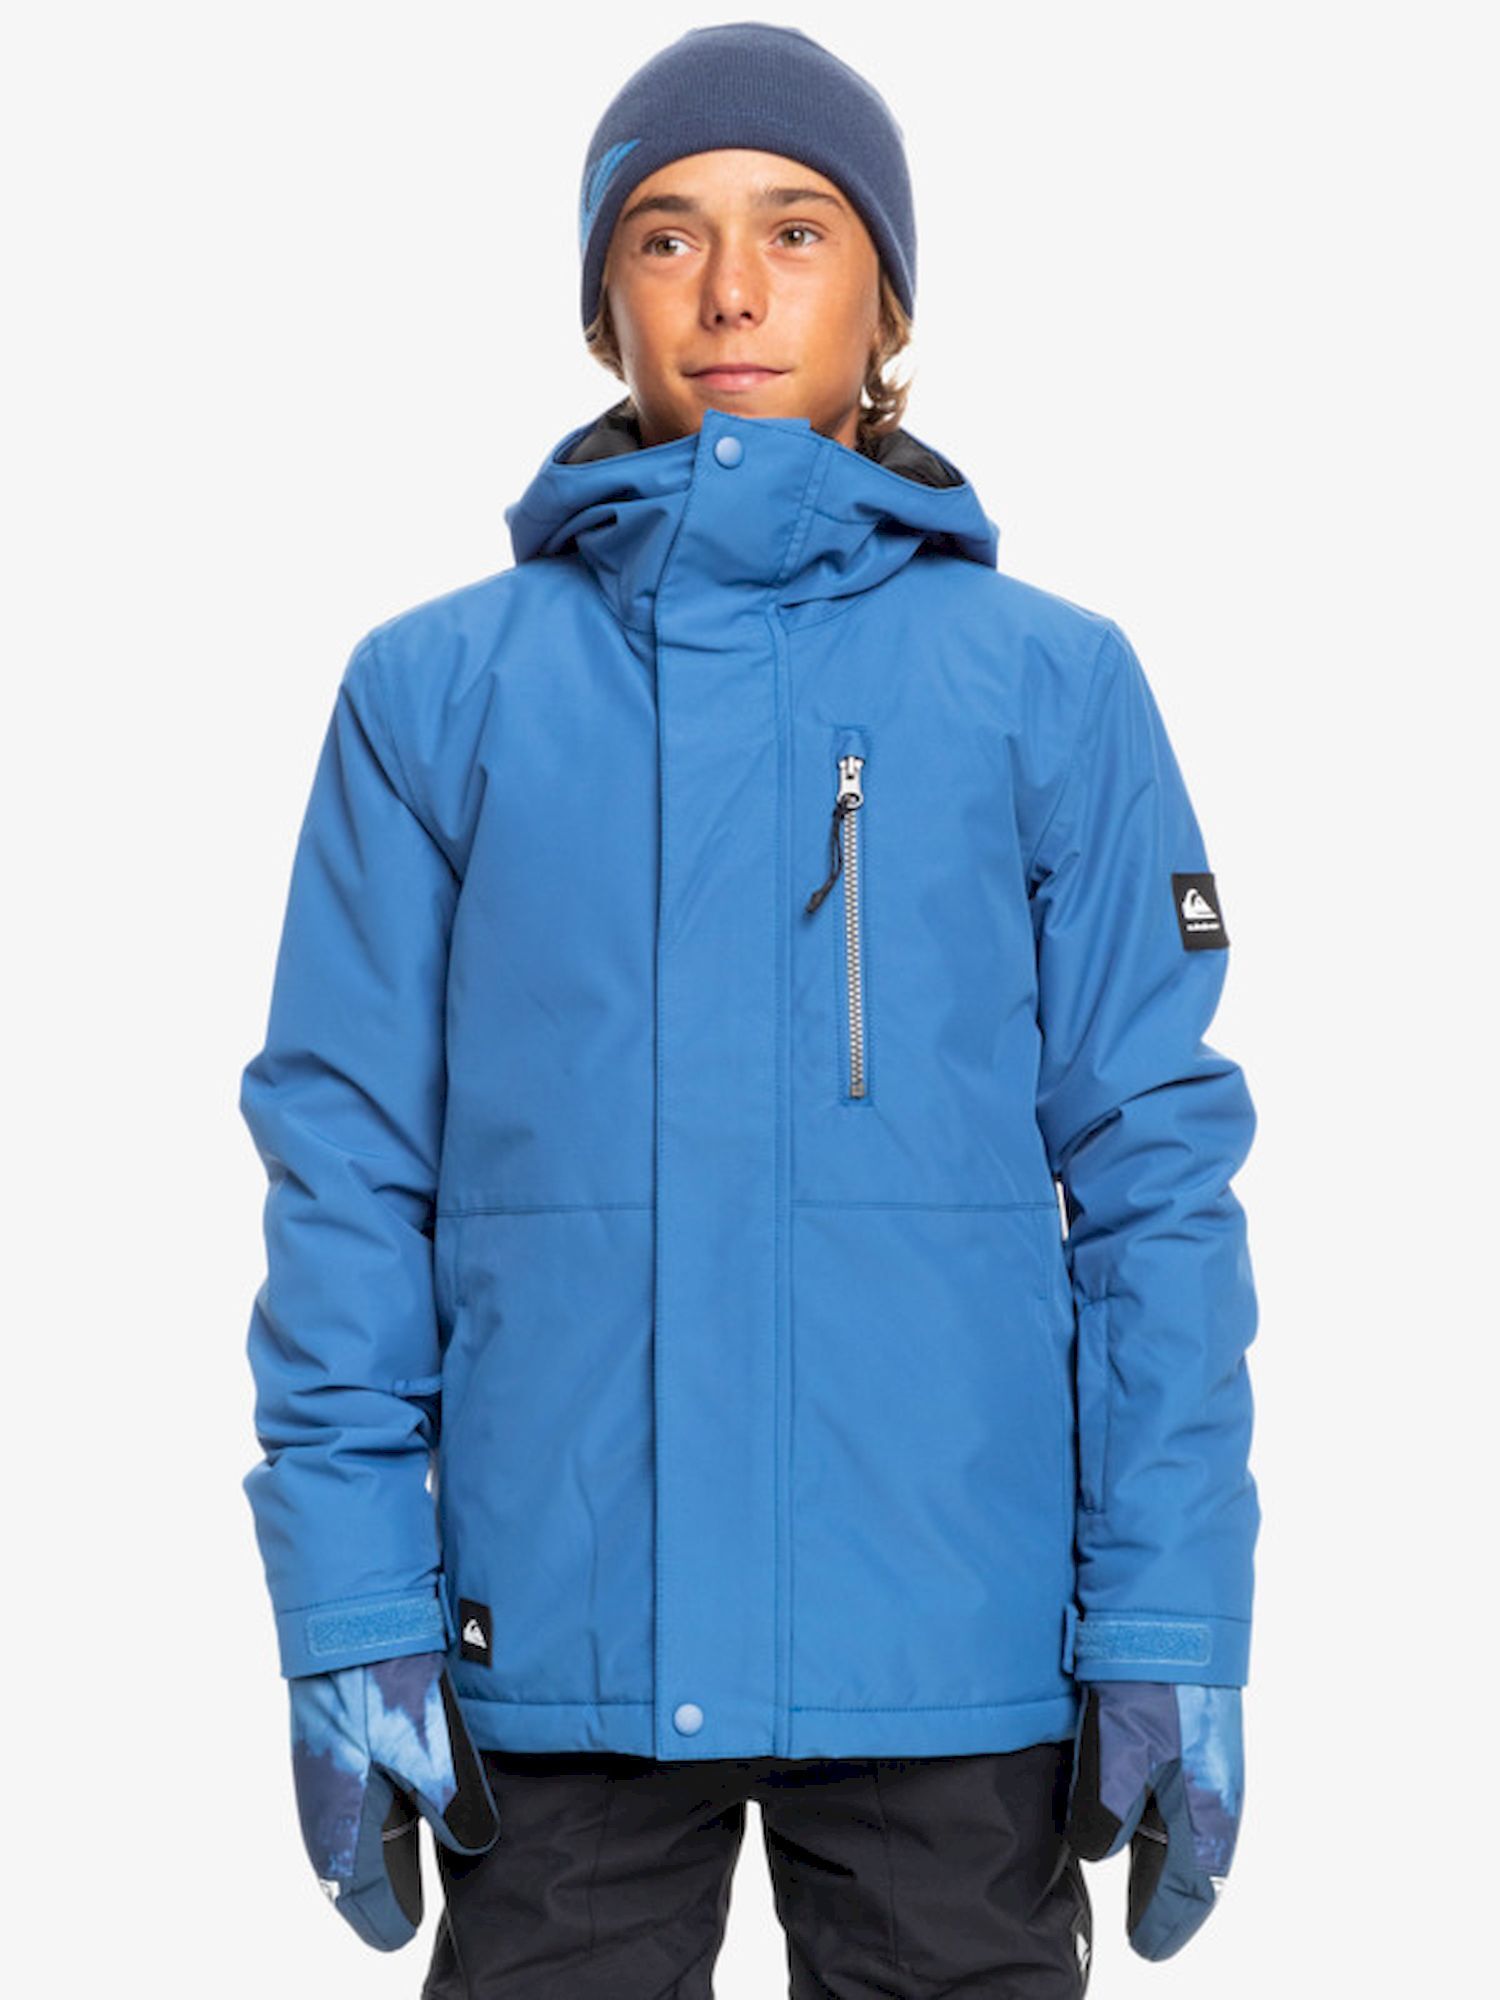 Quiksilver Mission Solid Youth Jacket - Chaqueta de esquí - Niños | Hardloop